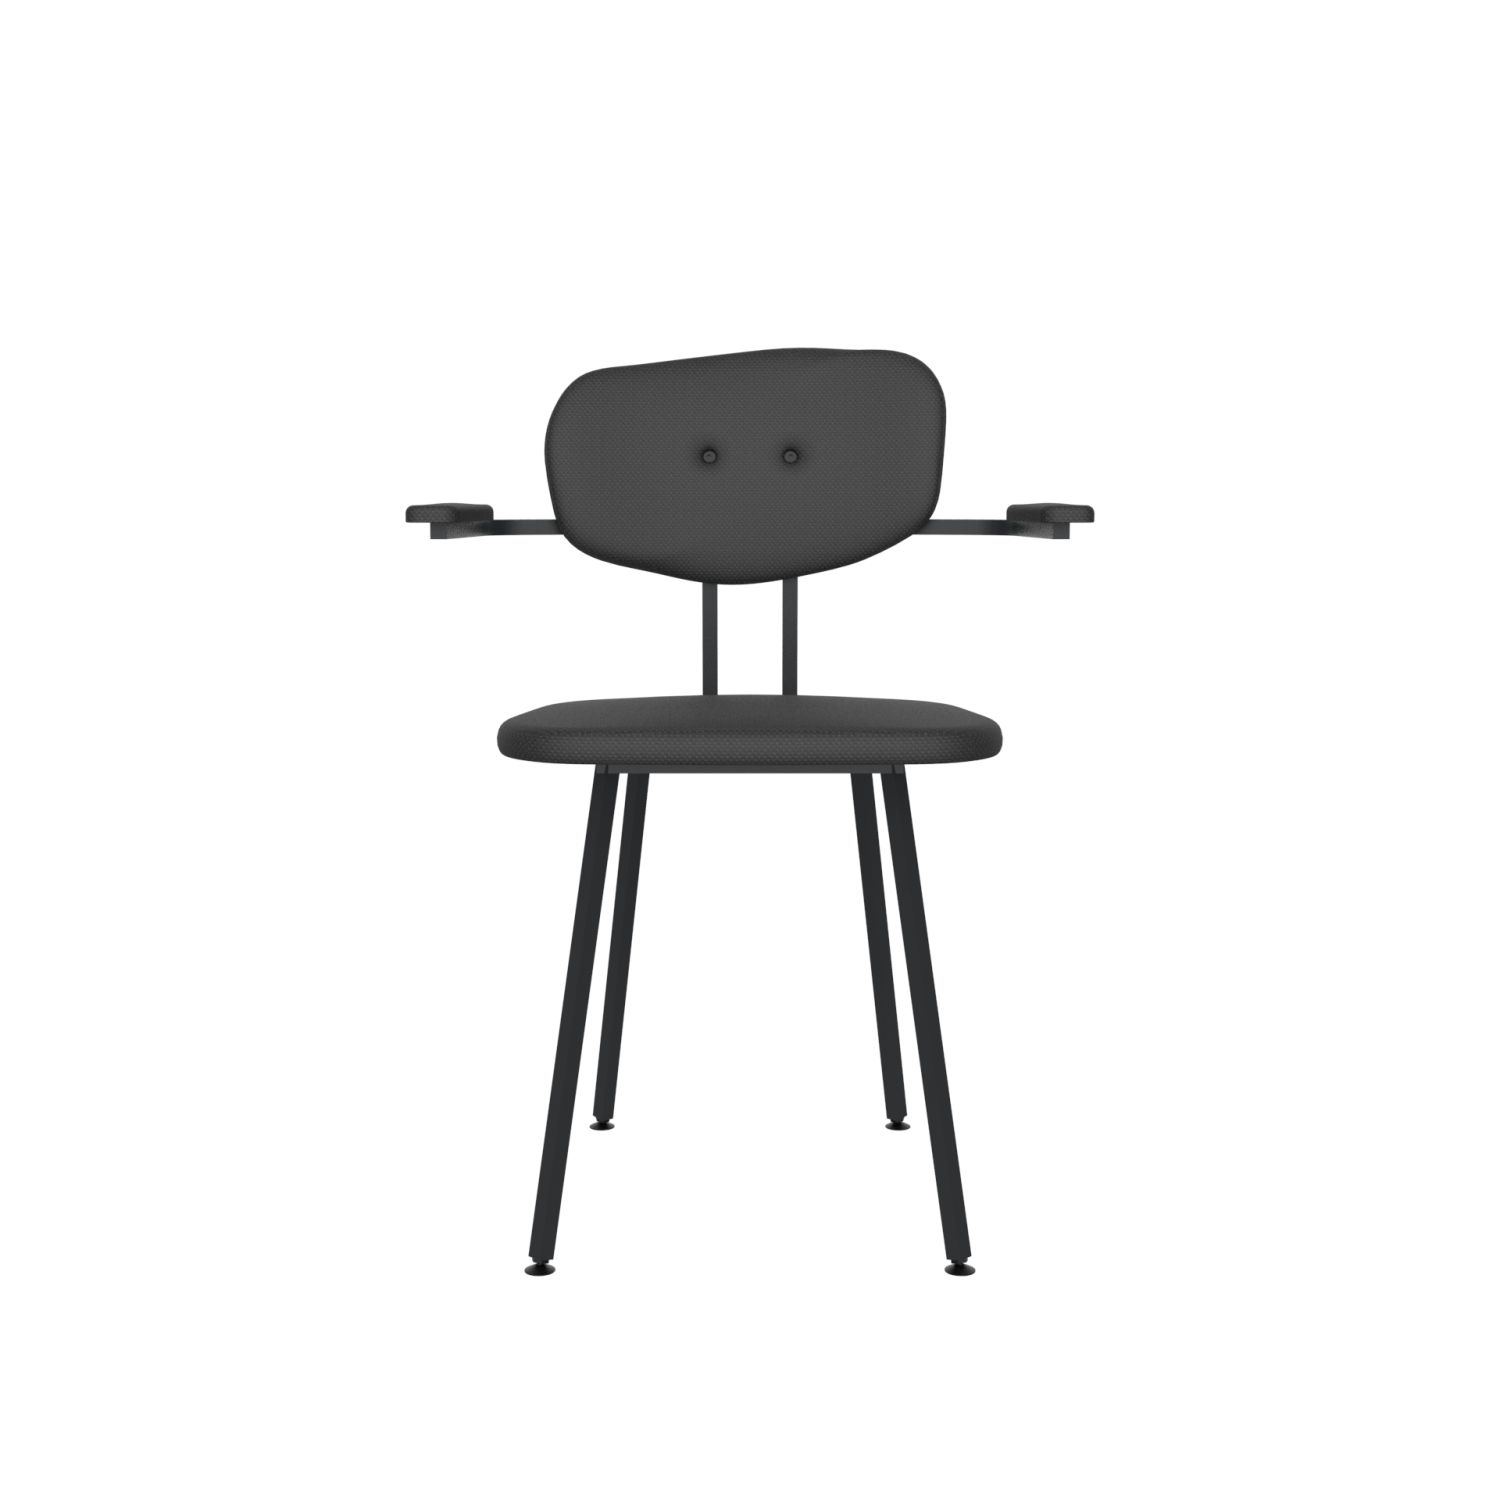 lensvelt maarten baas chair 102 not stackable with armrests backrest c havana black 090 black ral9005 hard leg ends